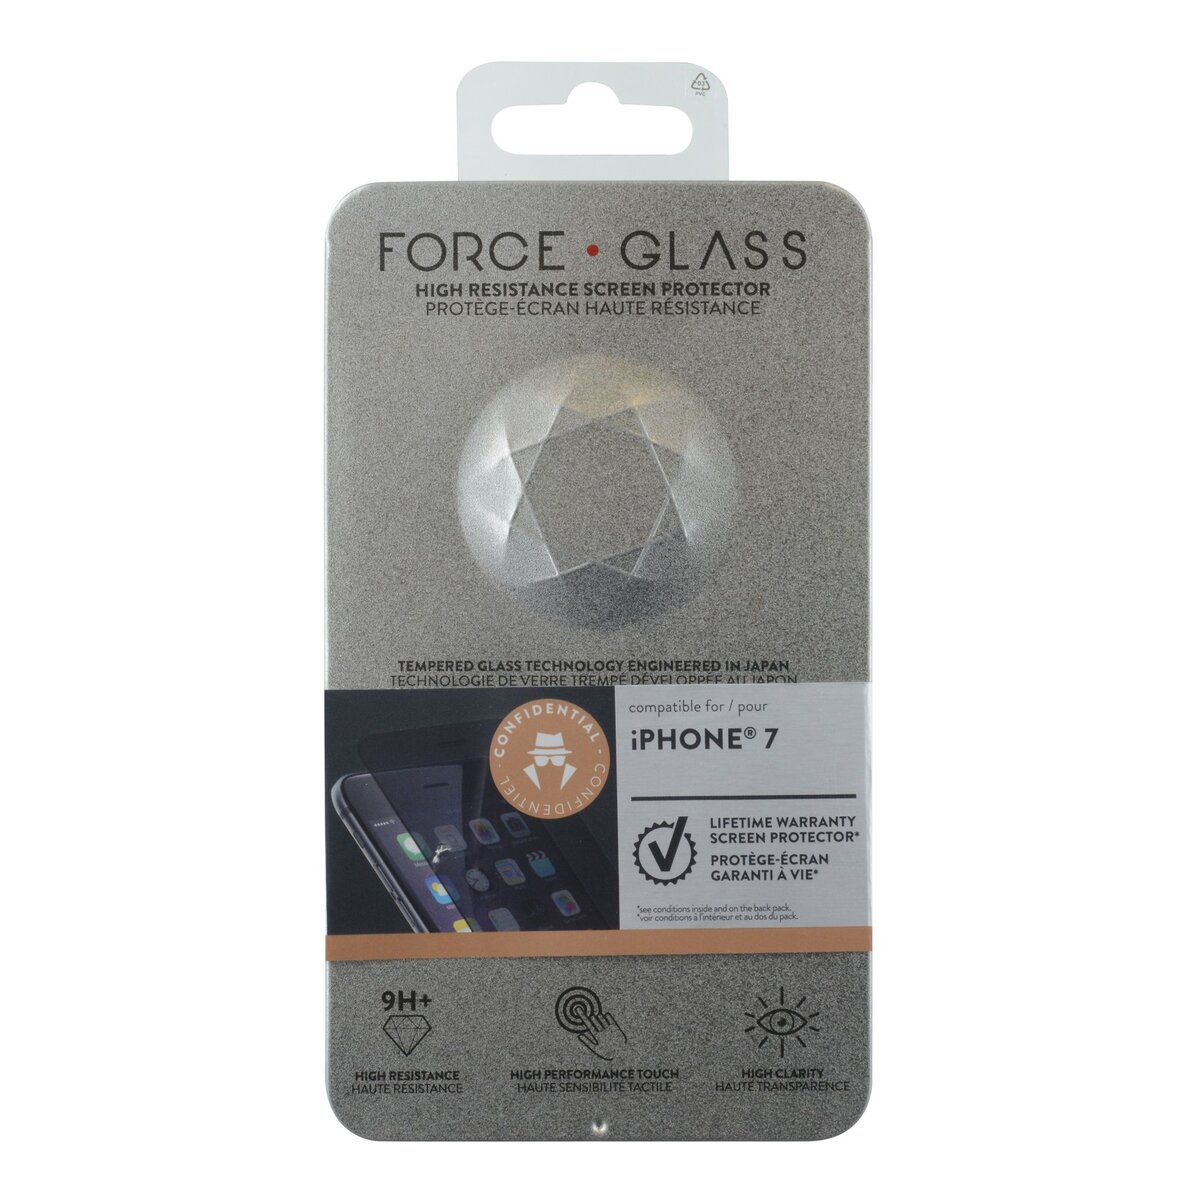 FORCEGLASS Protège-écran en verre trempé Force Glass fumé pour iPhone 7